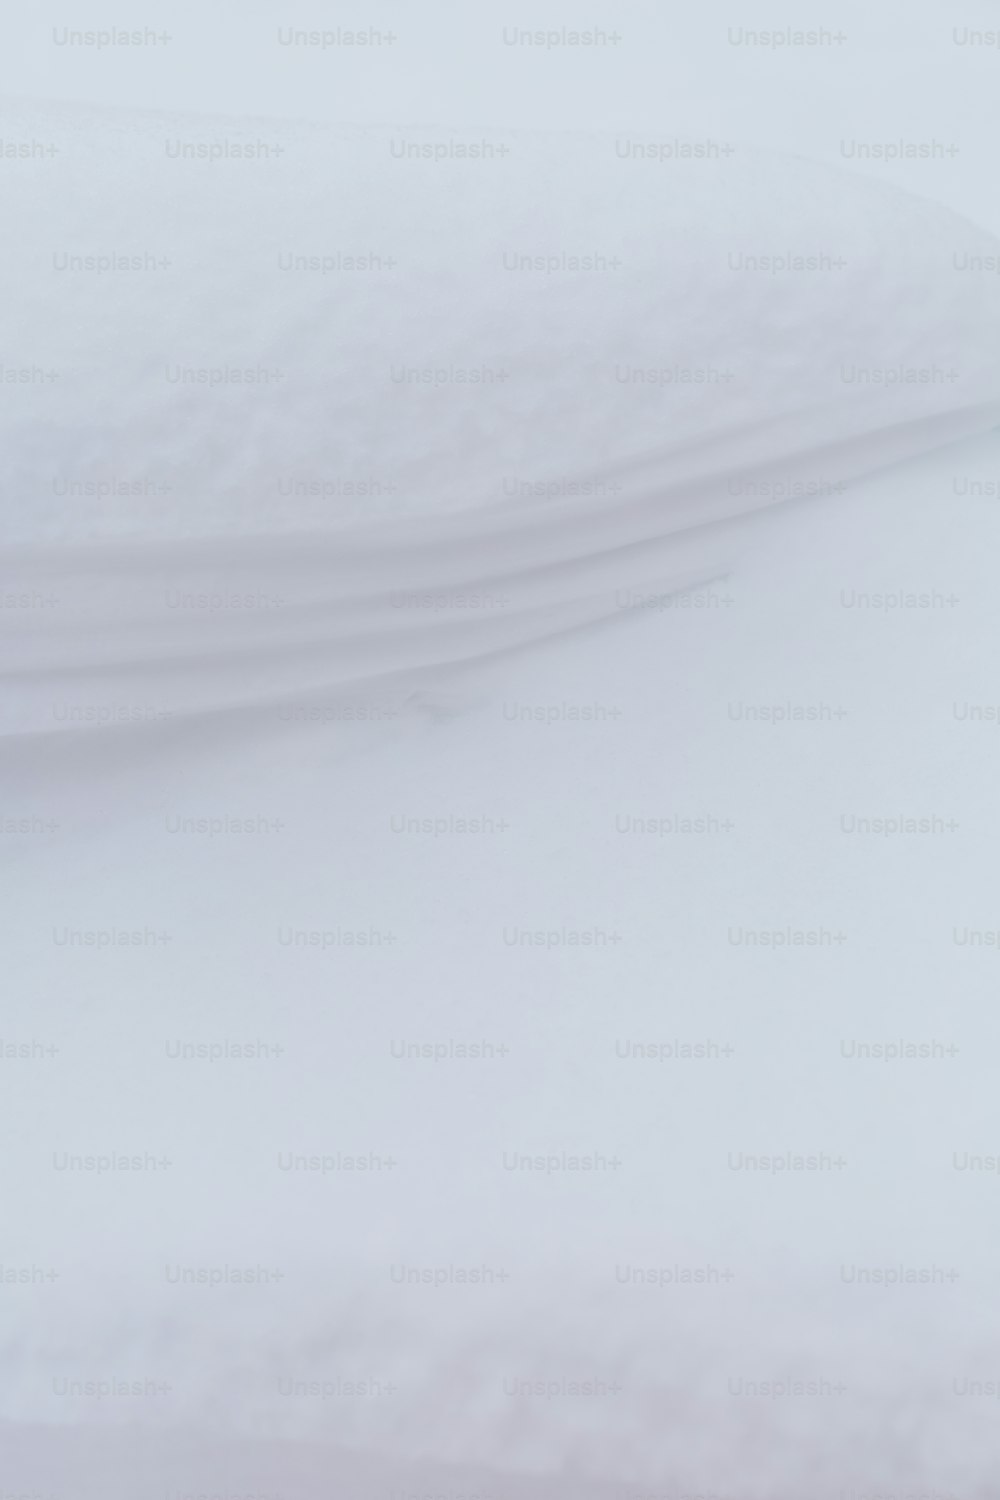 Ein Snowboarder fährt im Schnee einen Hügel hinunter